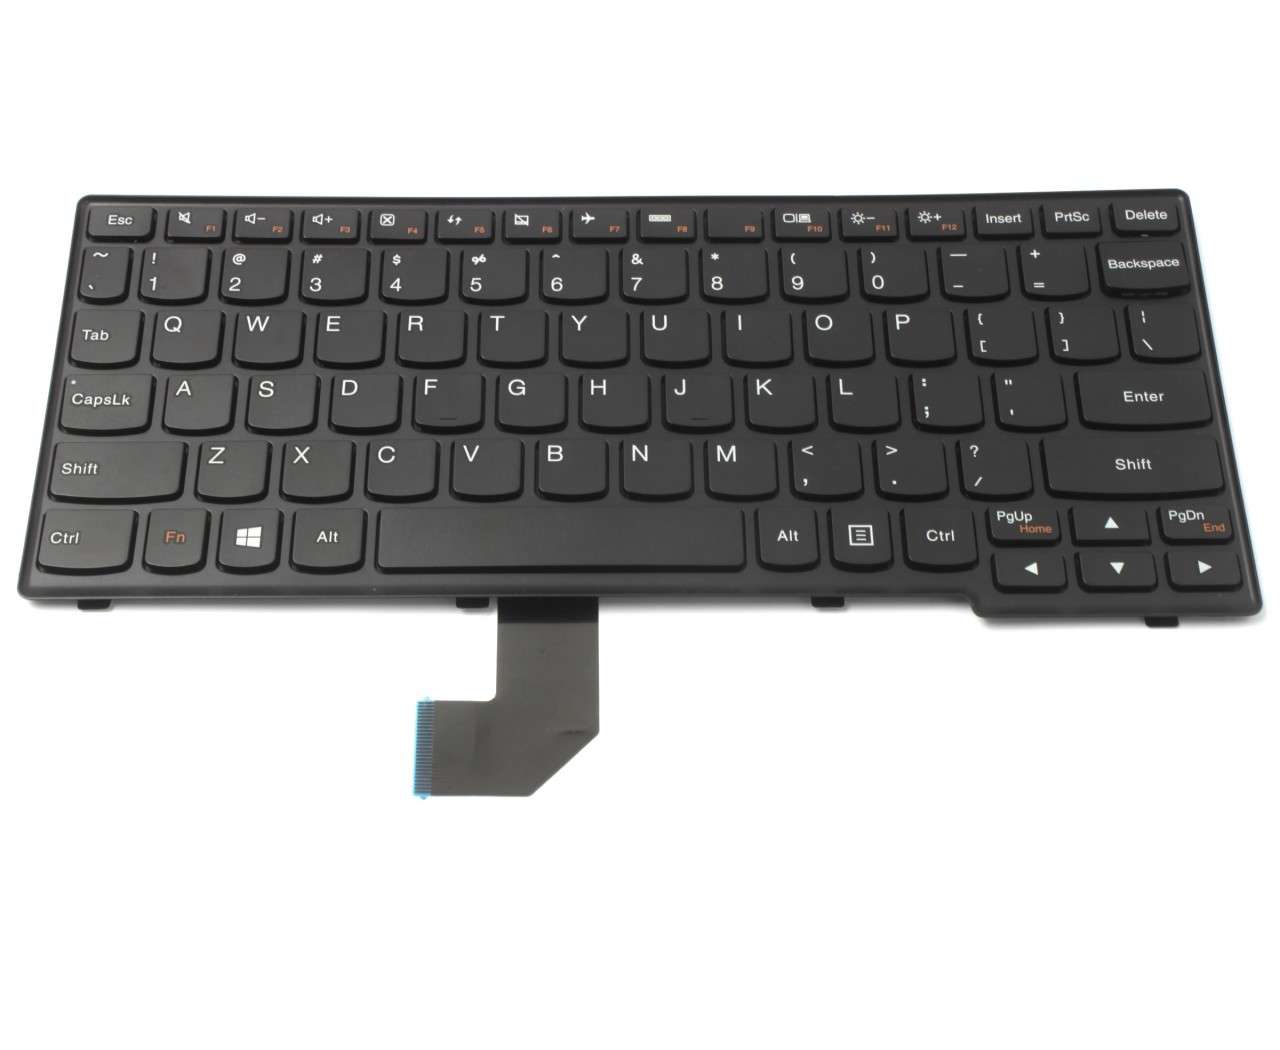 Tastatura Lenovo 25204707